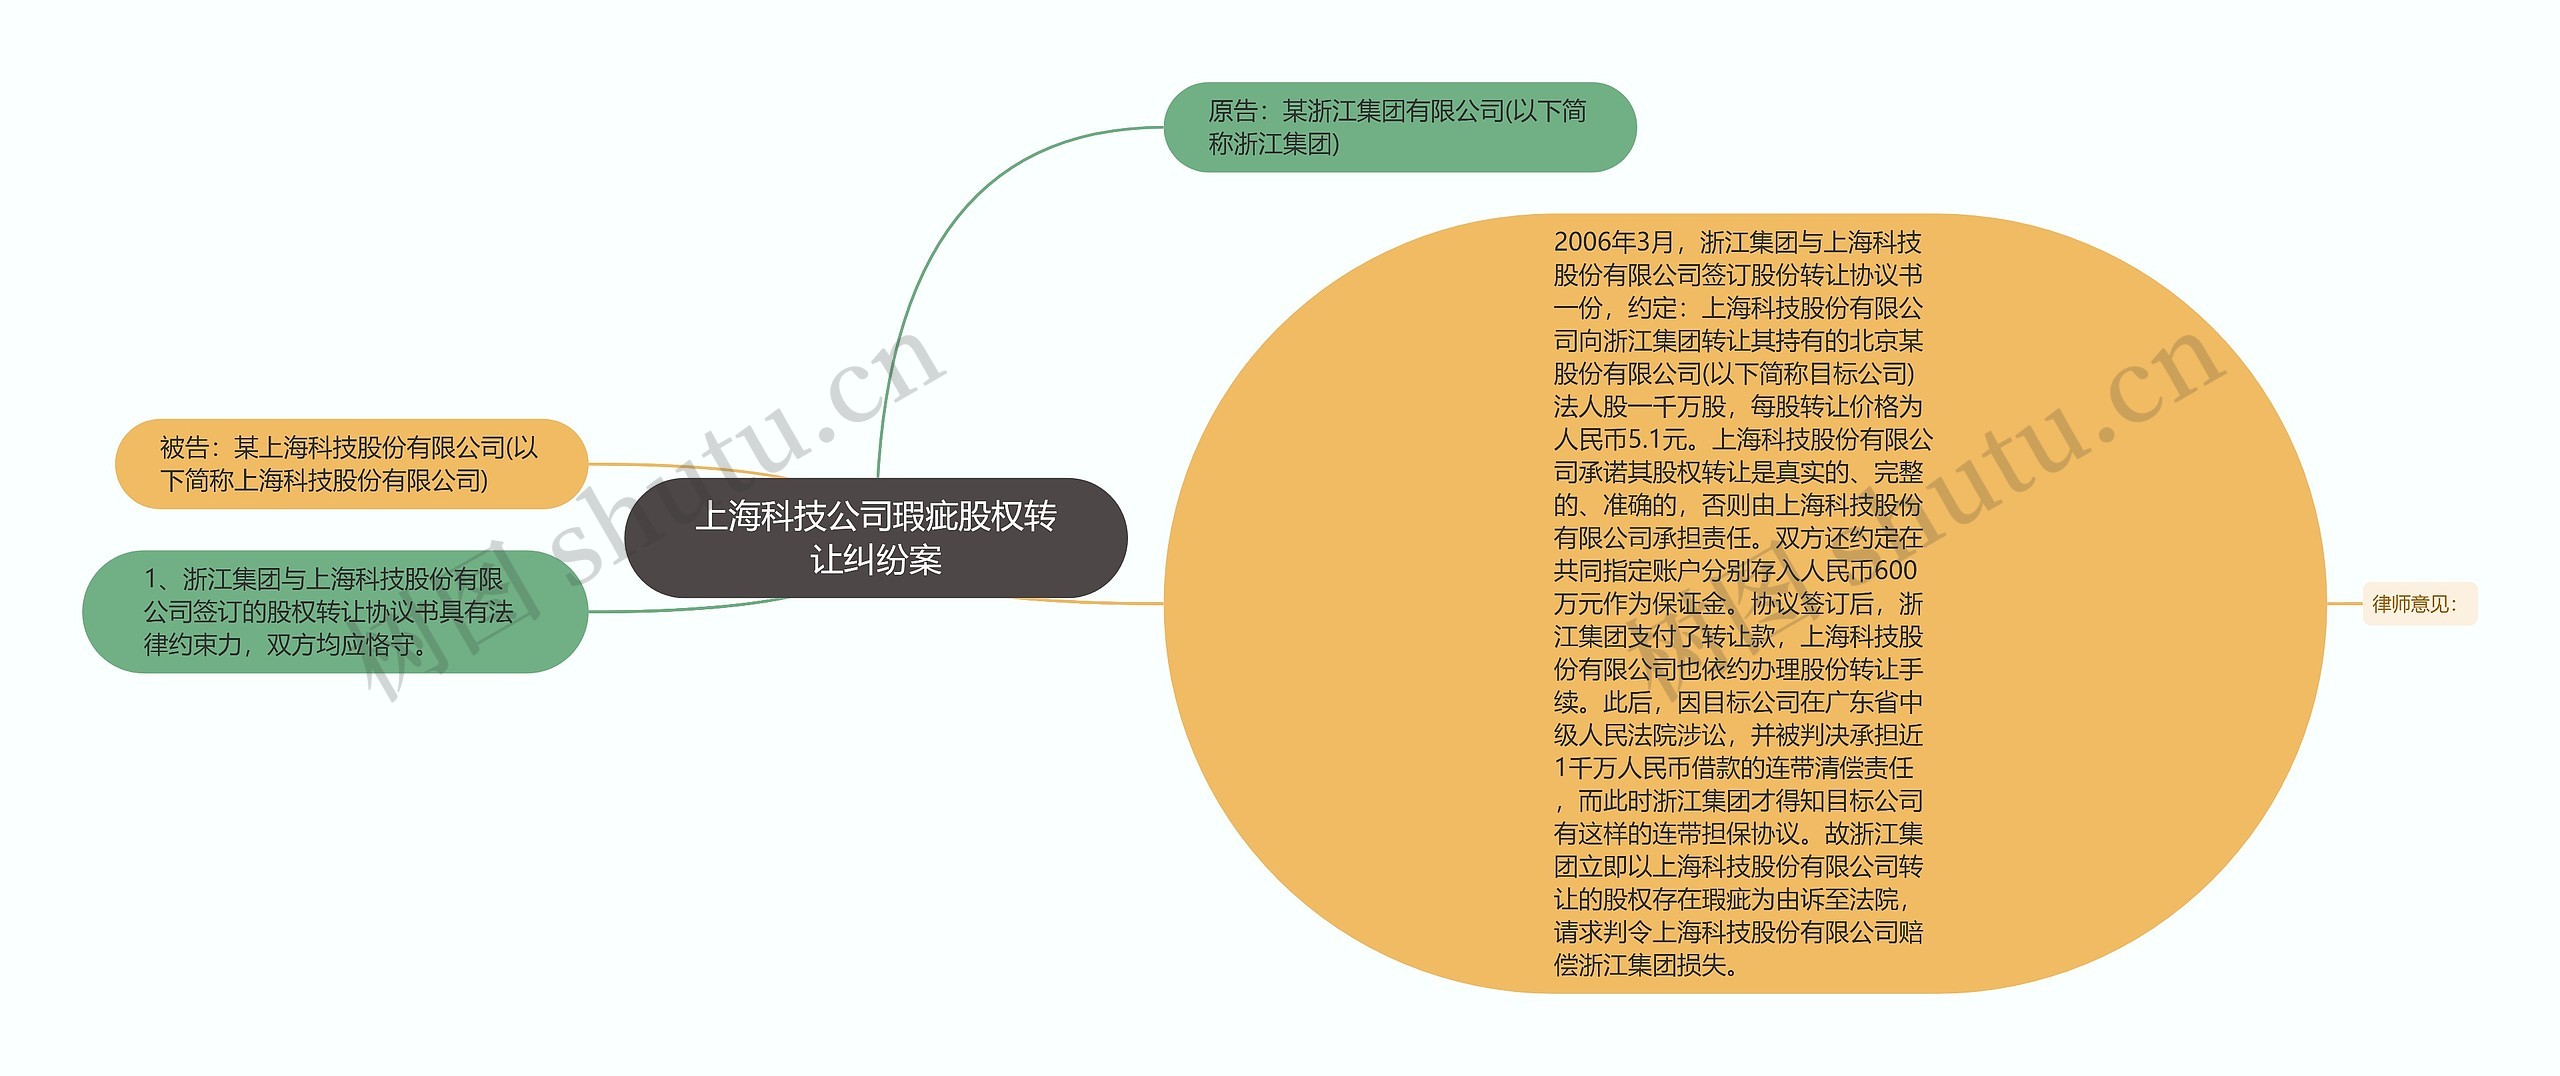 上海科技公司瑕疵股权转让纠纷案